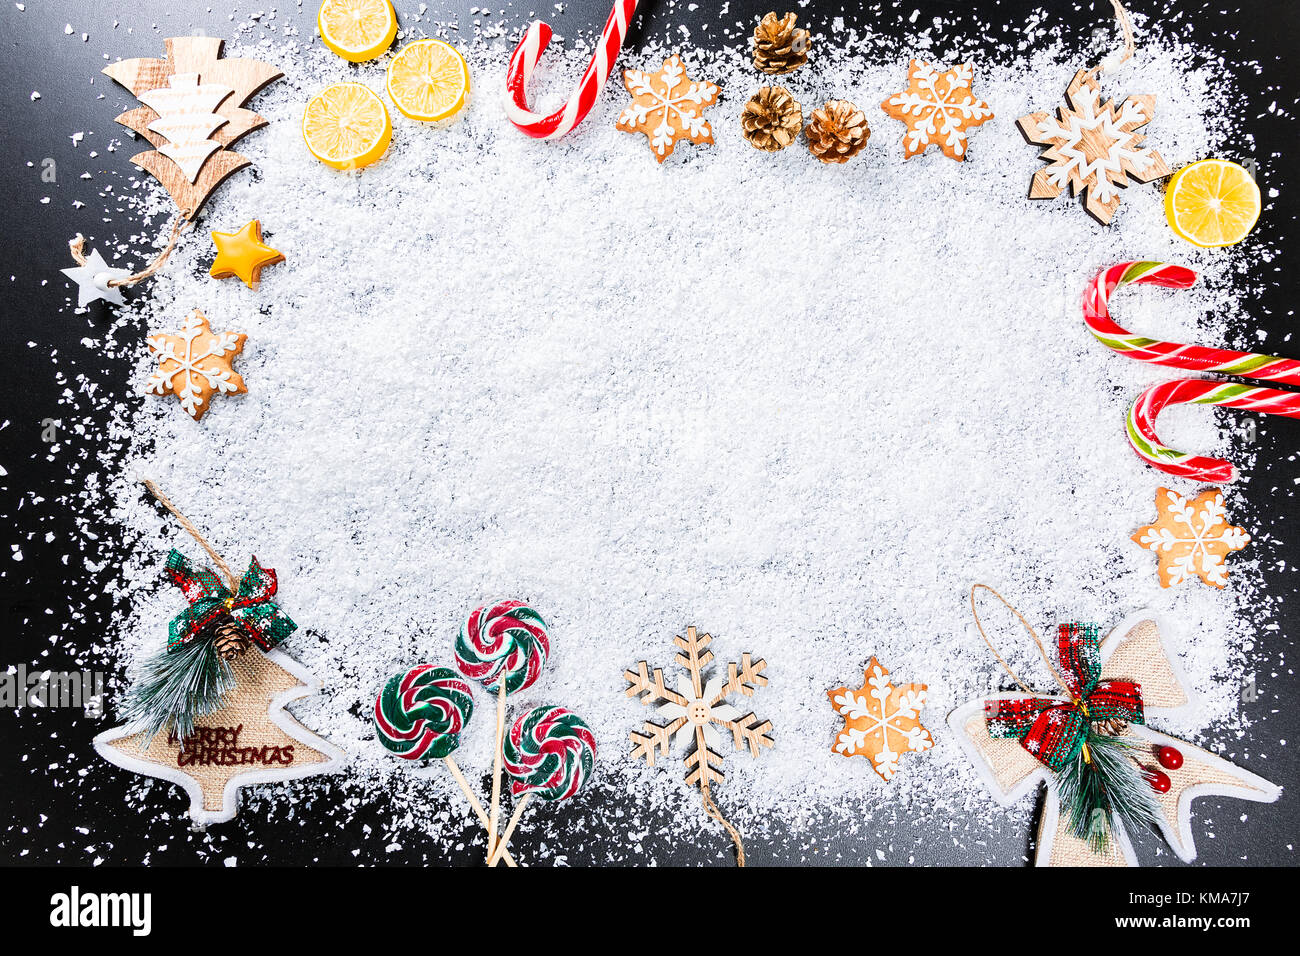 Fond de Noël avec des flocons de neige blanc, d'épices, des jouets, des bonbons au citron, et nouvel an vacances d'hiver. Décor cadre sur une table en bois noir Banque D'Images